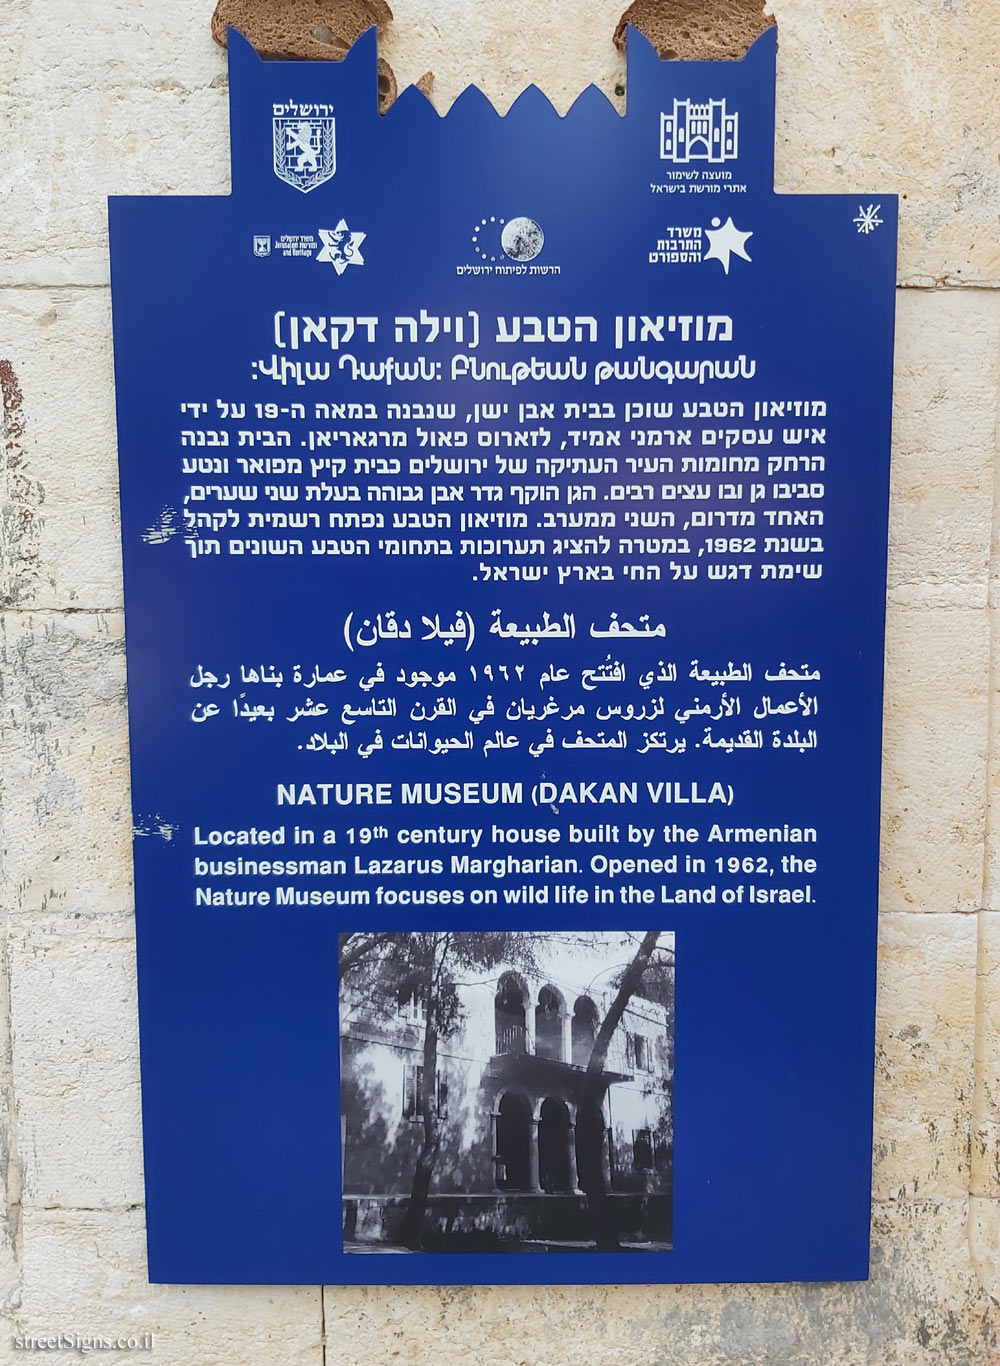 Jerusalem - Heritage Sites in Israel - Nature Museum (Dakan Villa)